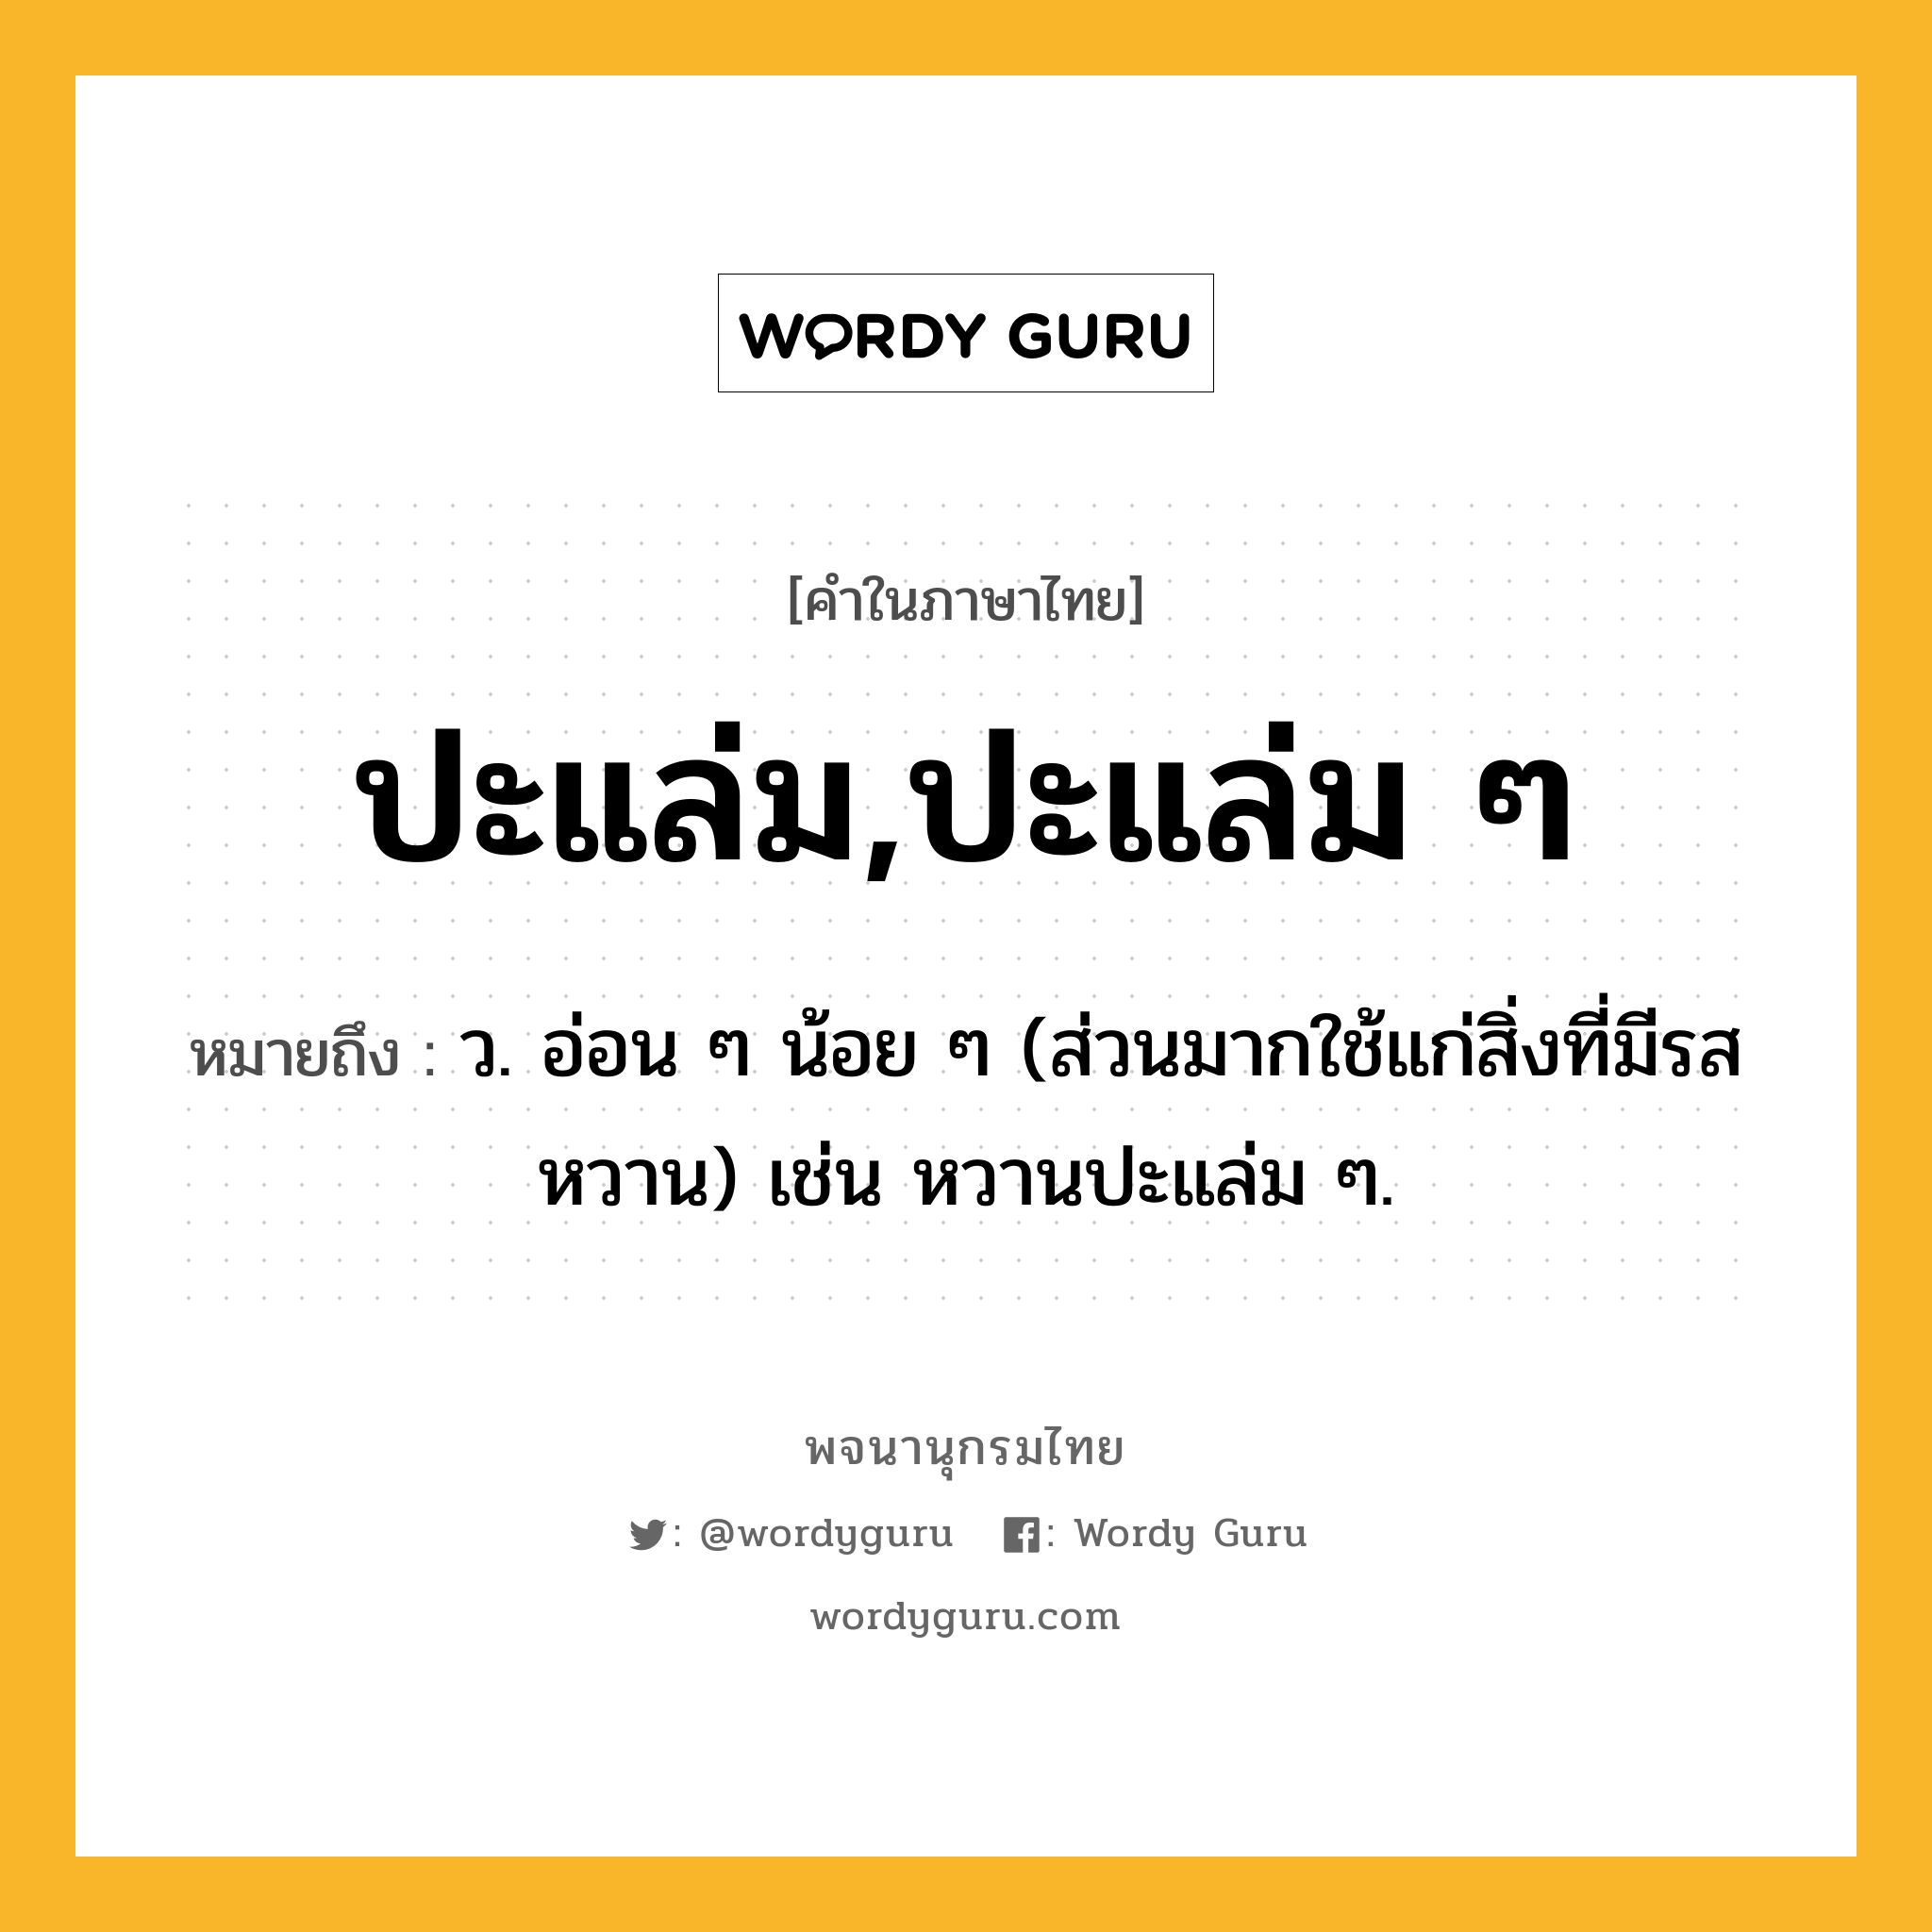 ปะแล่ม,ปะแล่ม ๆ หมายถึงอะไร?, คำในภาษาไทย ปะแล่ม,ปะแล่ม ๆ หมายถึง ว. อ่อน ๆ น้อย ๆ (ส่วนมากใช้แก่สิ่งที่มีรสหวาน) เช่น หวานปะแล่ม ๆ.